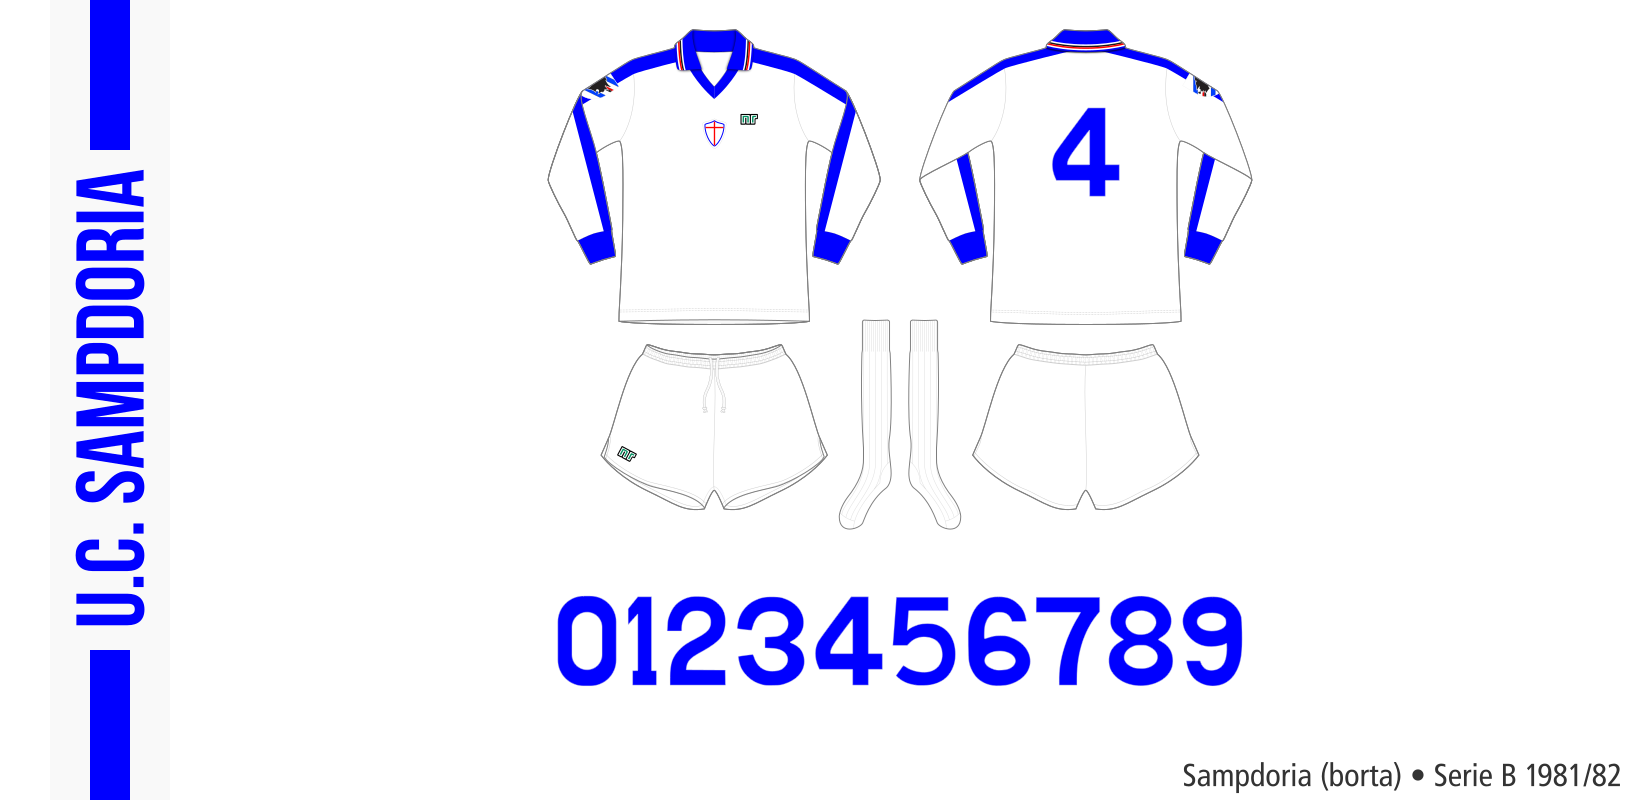 Sampdoria 1981/82 (borta)